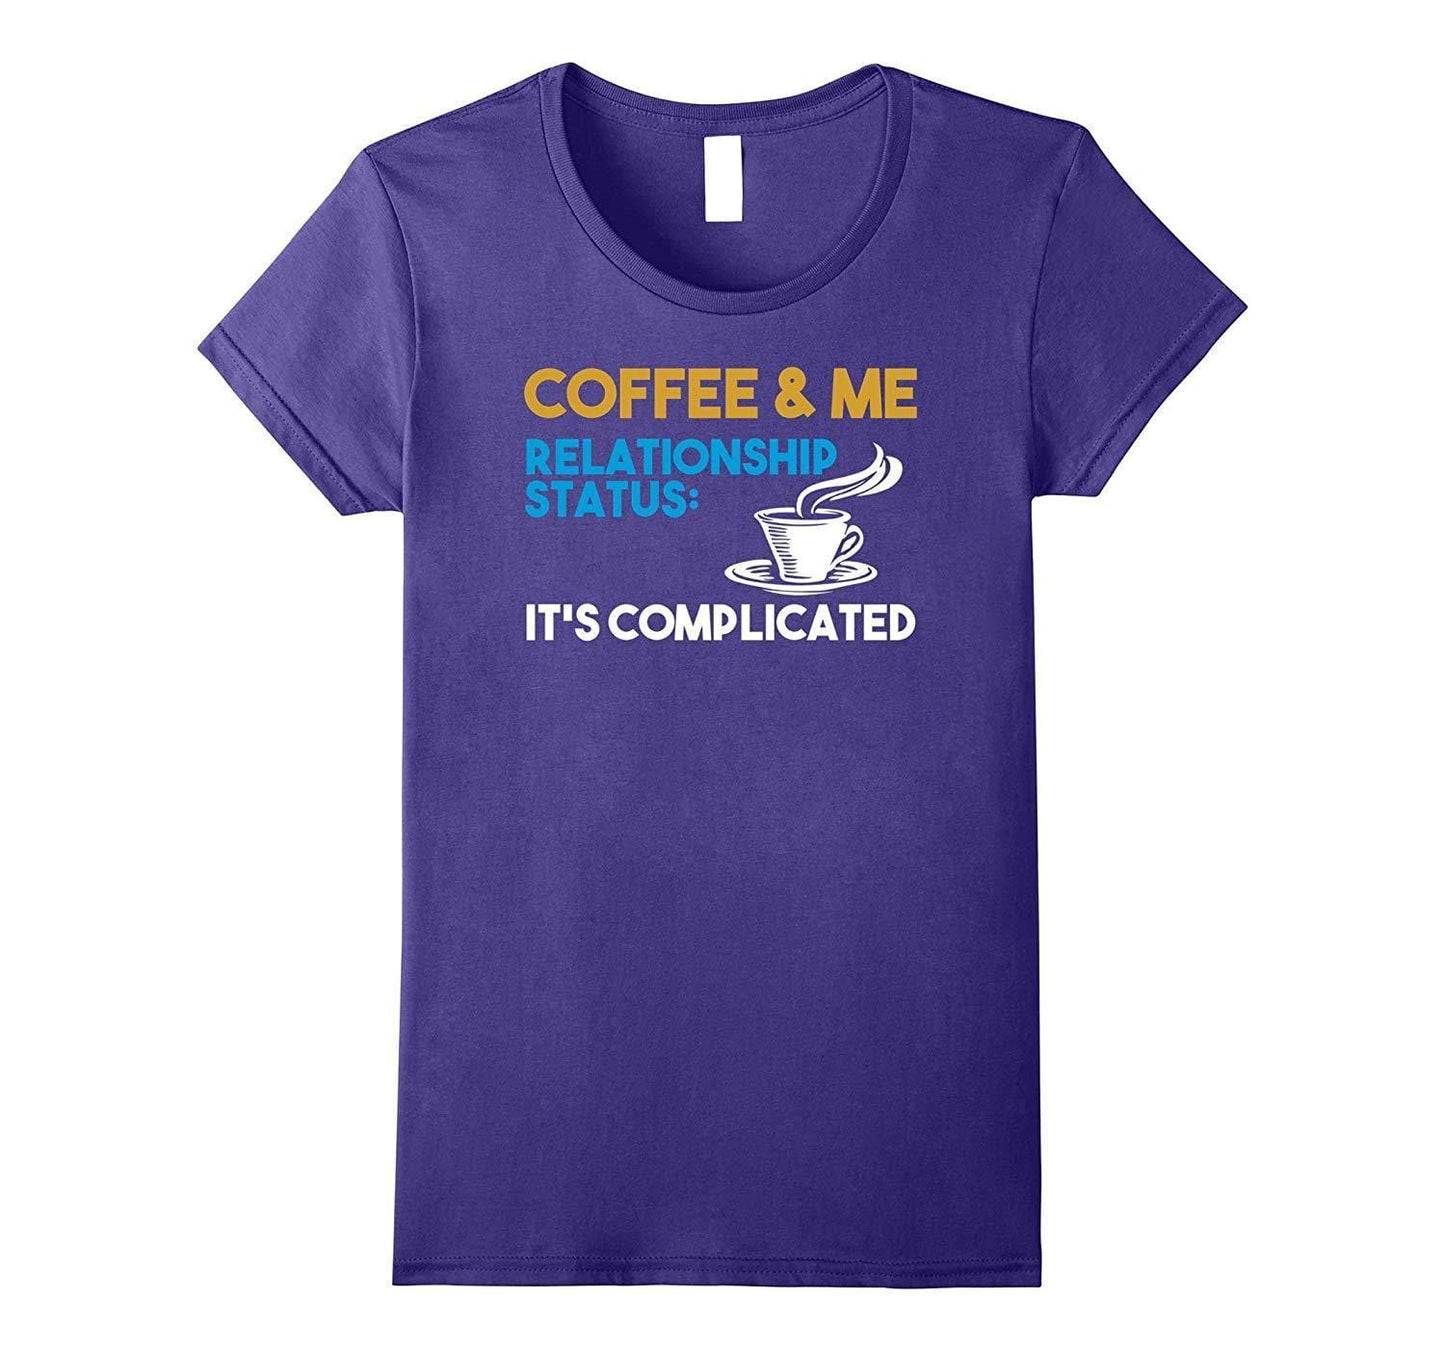 Grafik-T-Shirt Kaffeeliebhaber-T-Shirt Lustige Kaffee-Beziehungshemden Wowen 